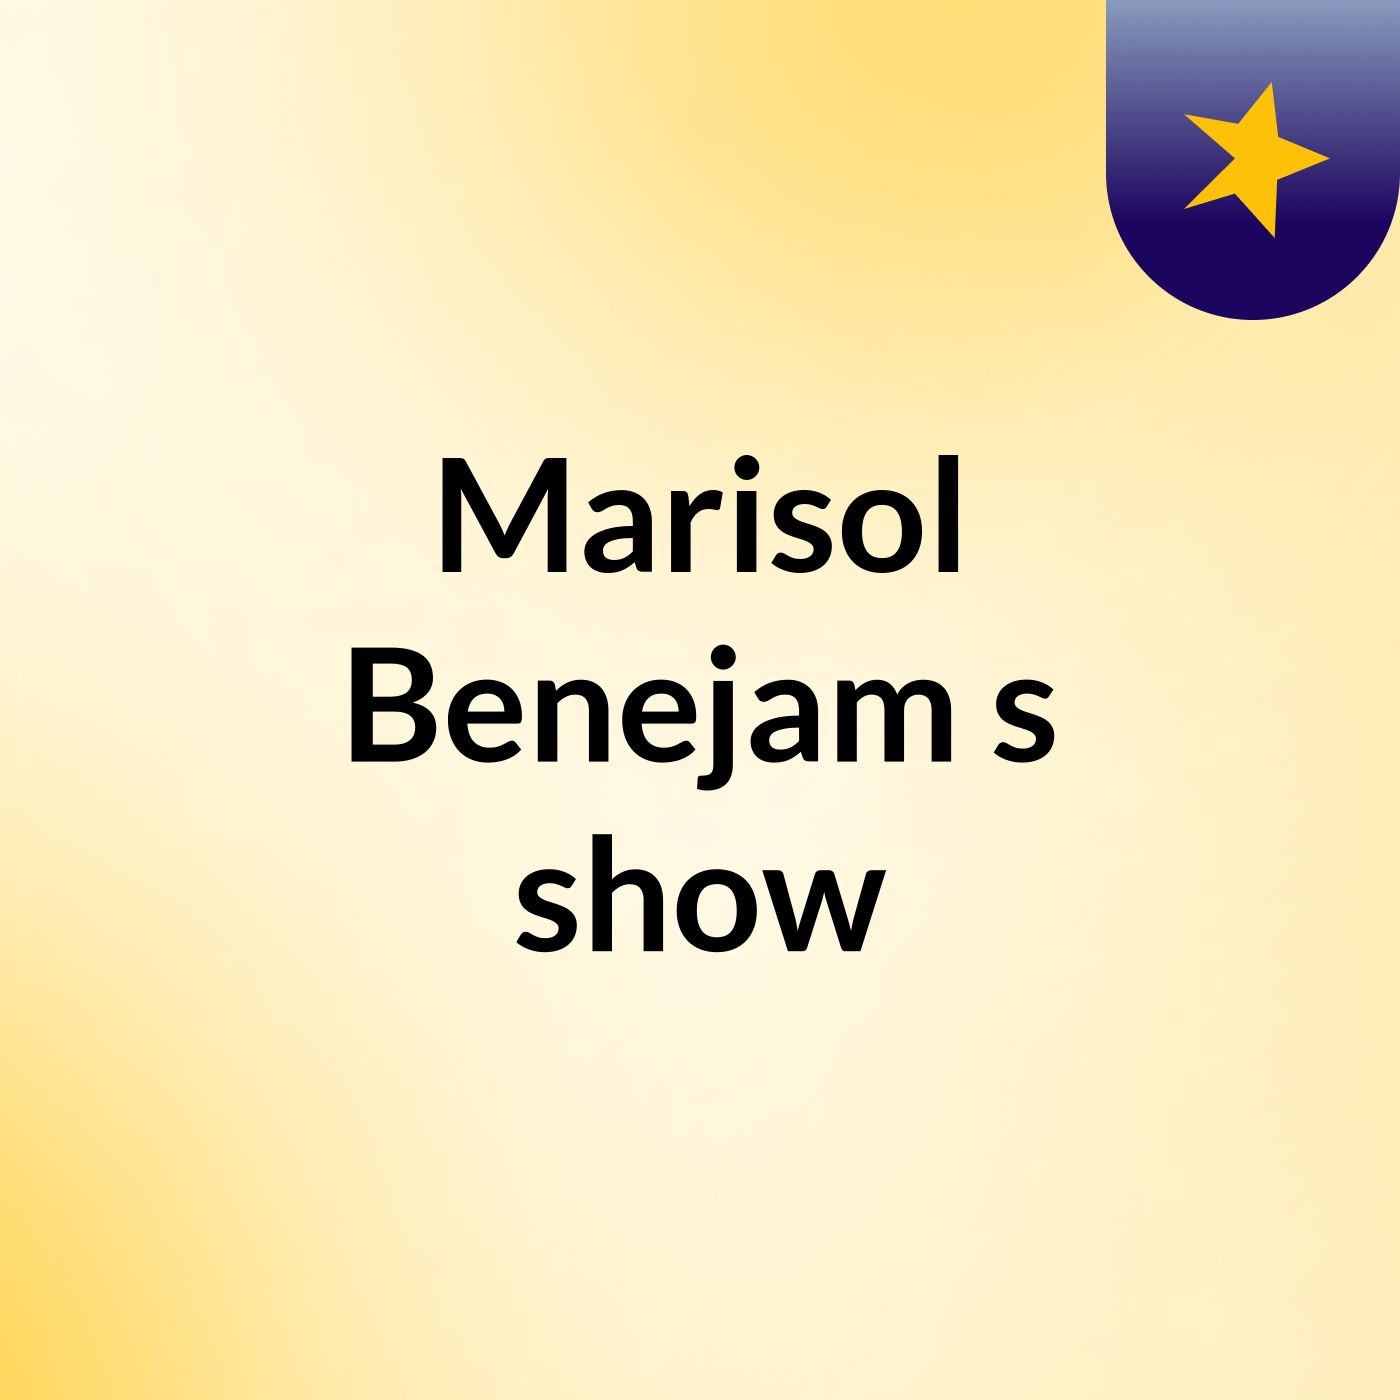 Marisol Benejam's show